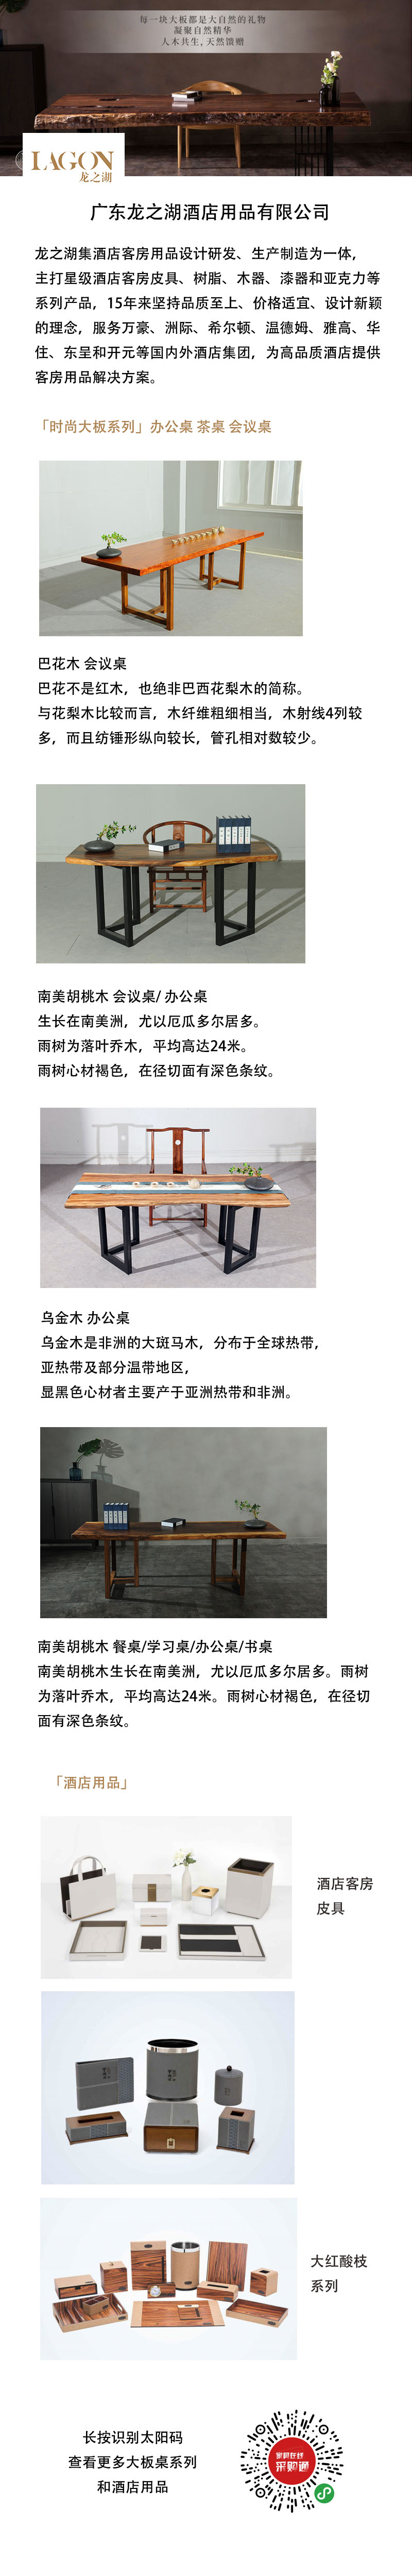 广东龙之湖酒店用品有限公司 & 时木大板TIMEWOODS 来自家具在线采购通